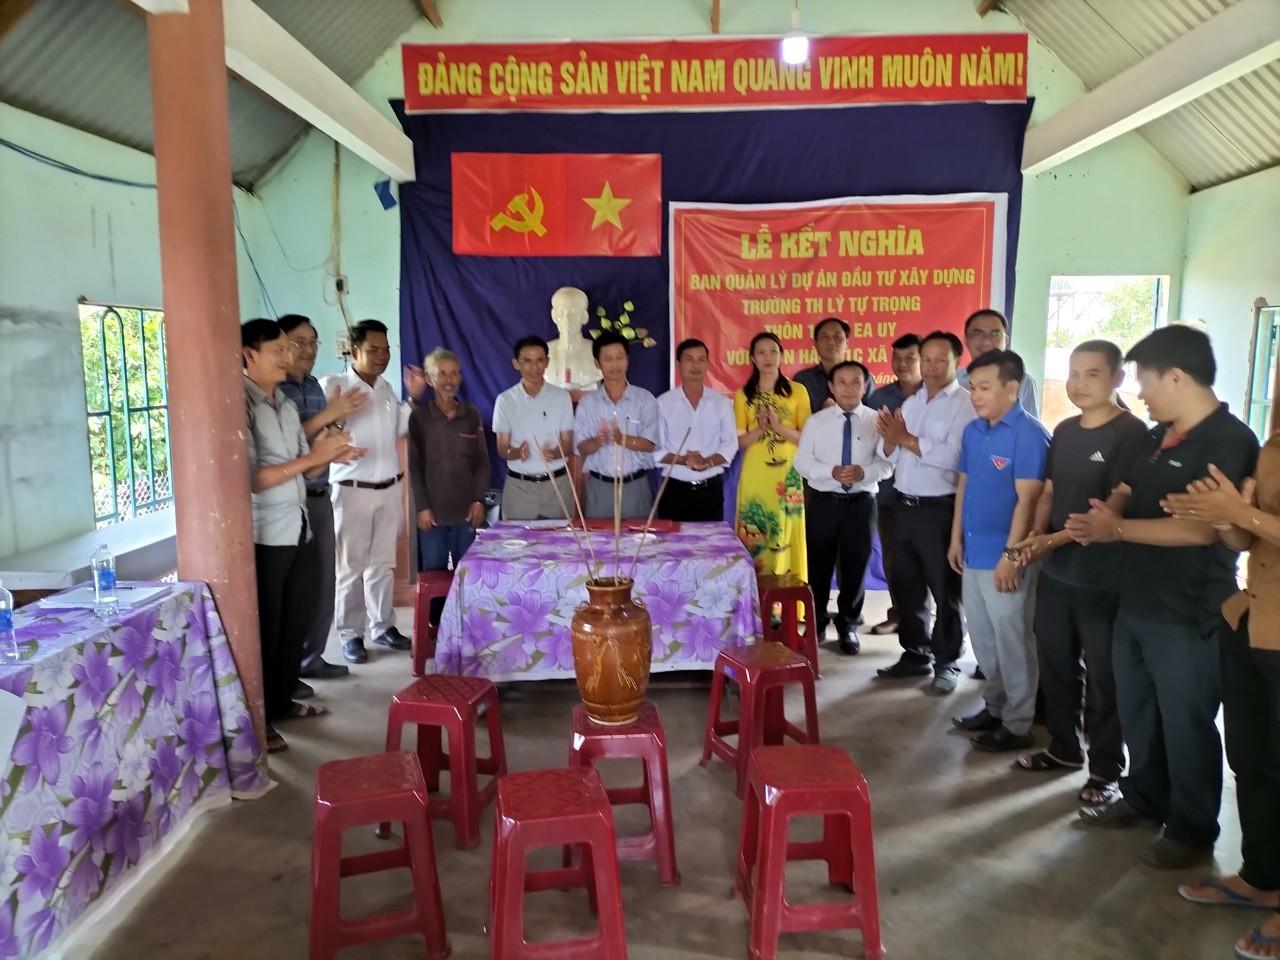 Thực Hiện Công Tác Kết Nghĩa Với Các Buôn Đồng Bào Dân Tộc Thiếu Số Trên Địa Bàn Xã Ea Uy huyện Krông Pắc